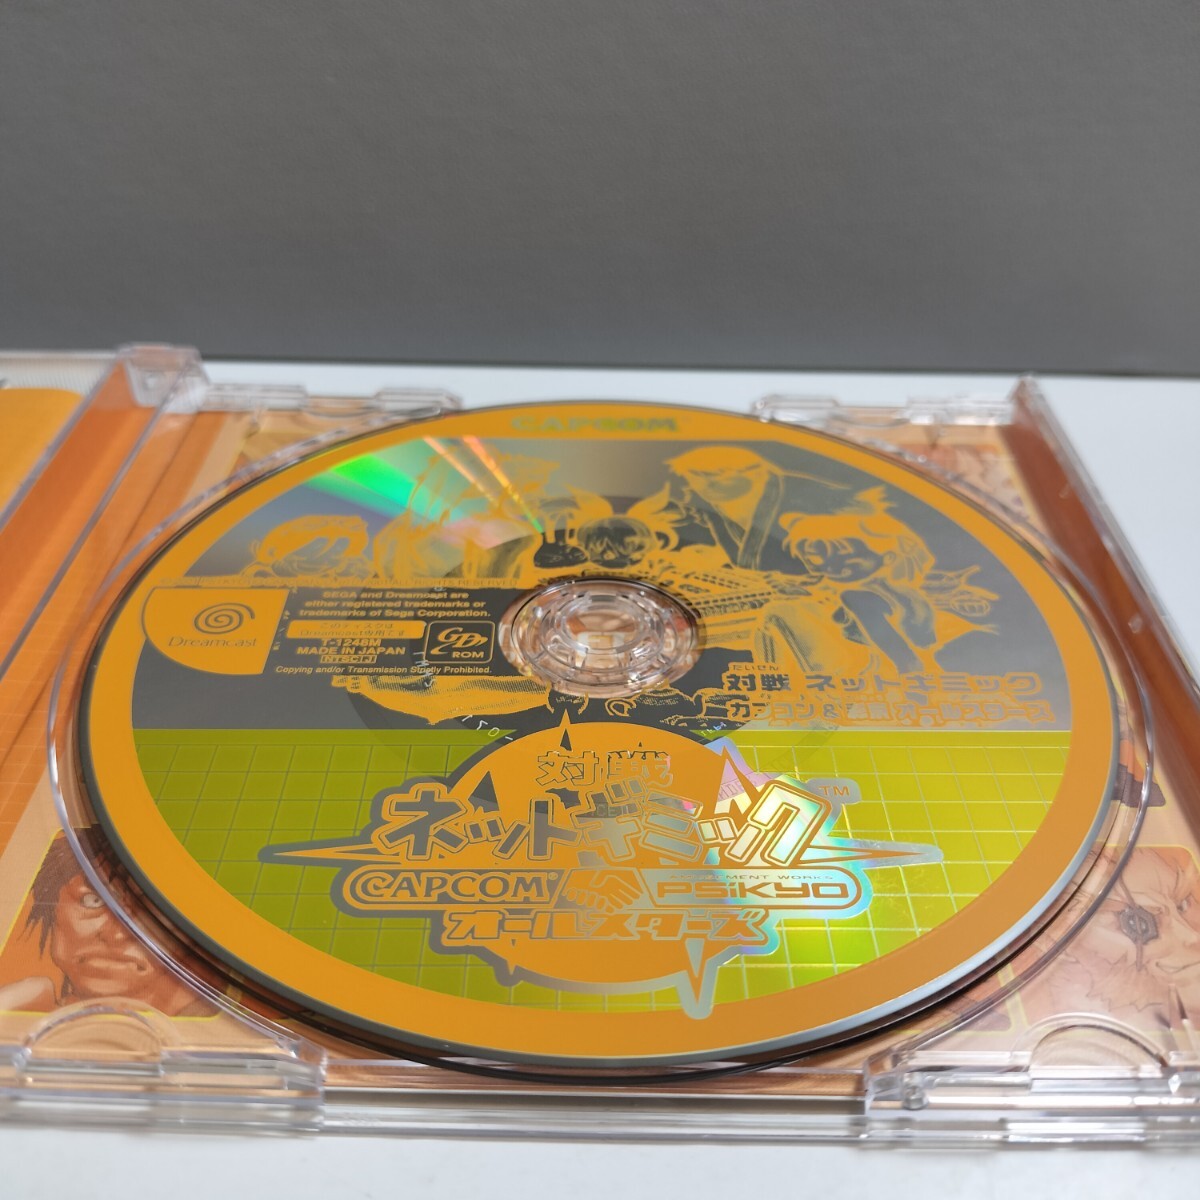  beautiful goods SEGA Dreamcast DC Sega Dreamcast doli Cath soft against war net gimik Capcom &. capital all Star zCAPCOM